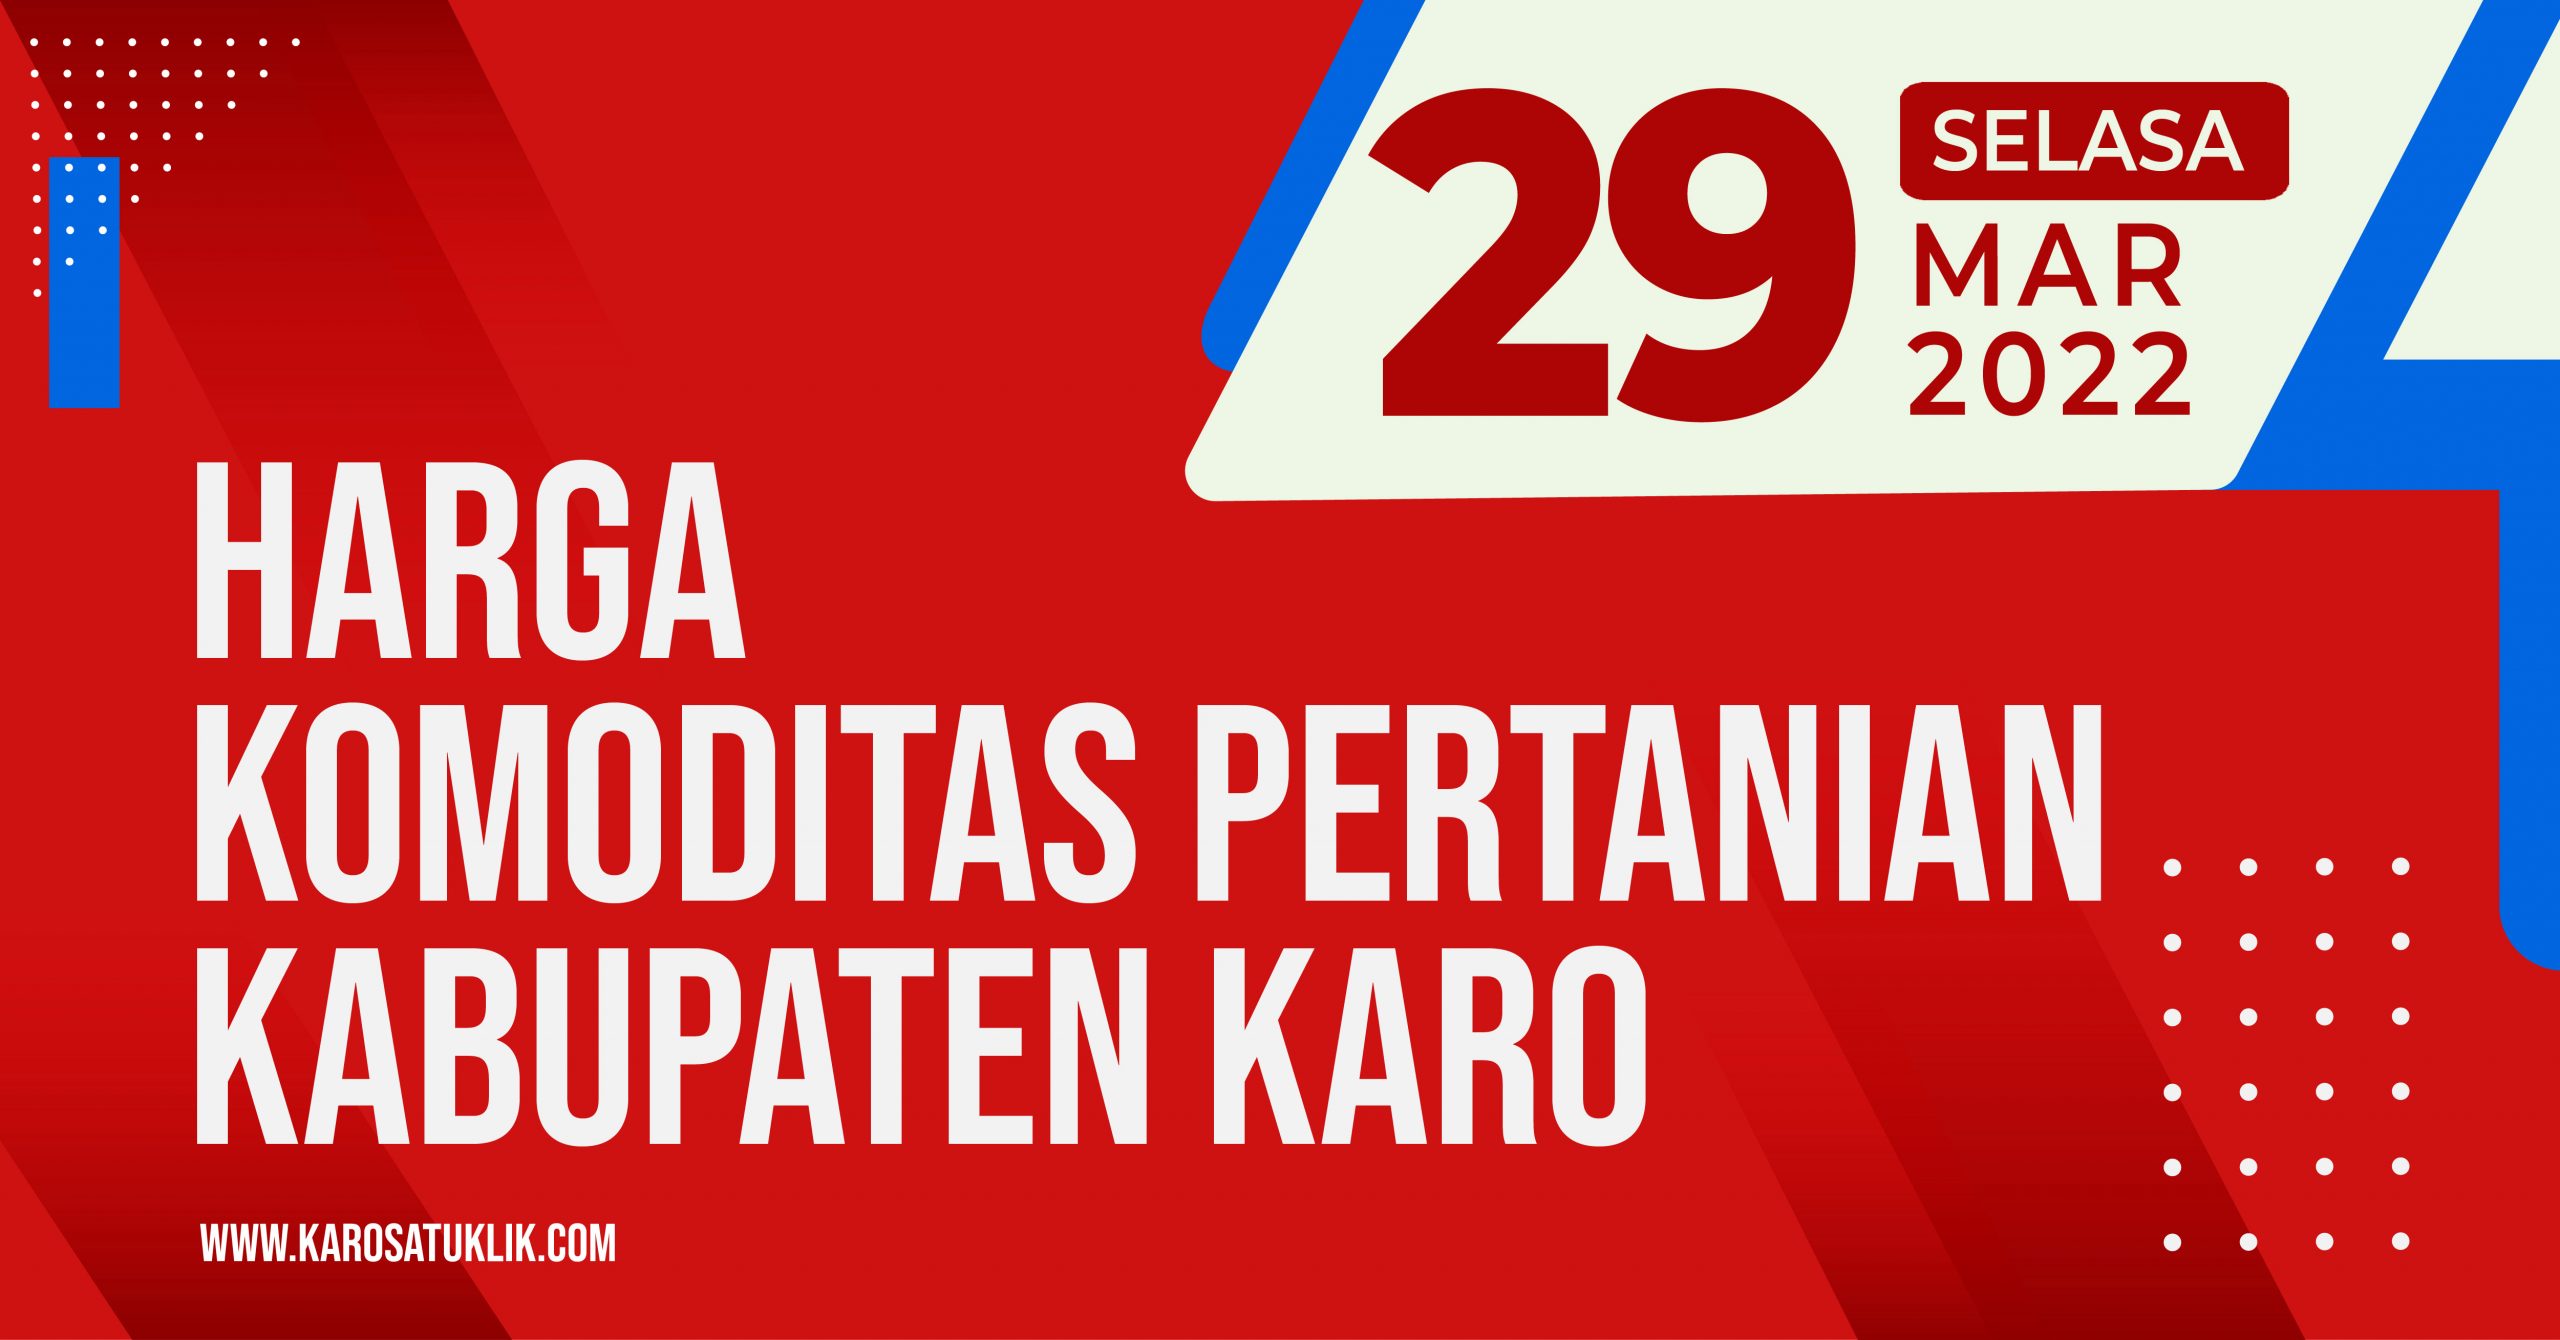 Daftar Harga Komoditas Pertanian Kabupaten Karo, Selasa 29 Maret 2022